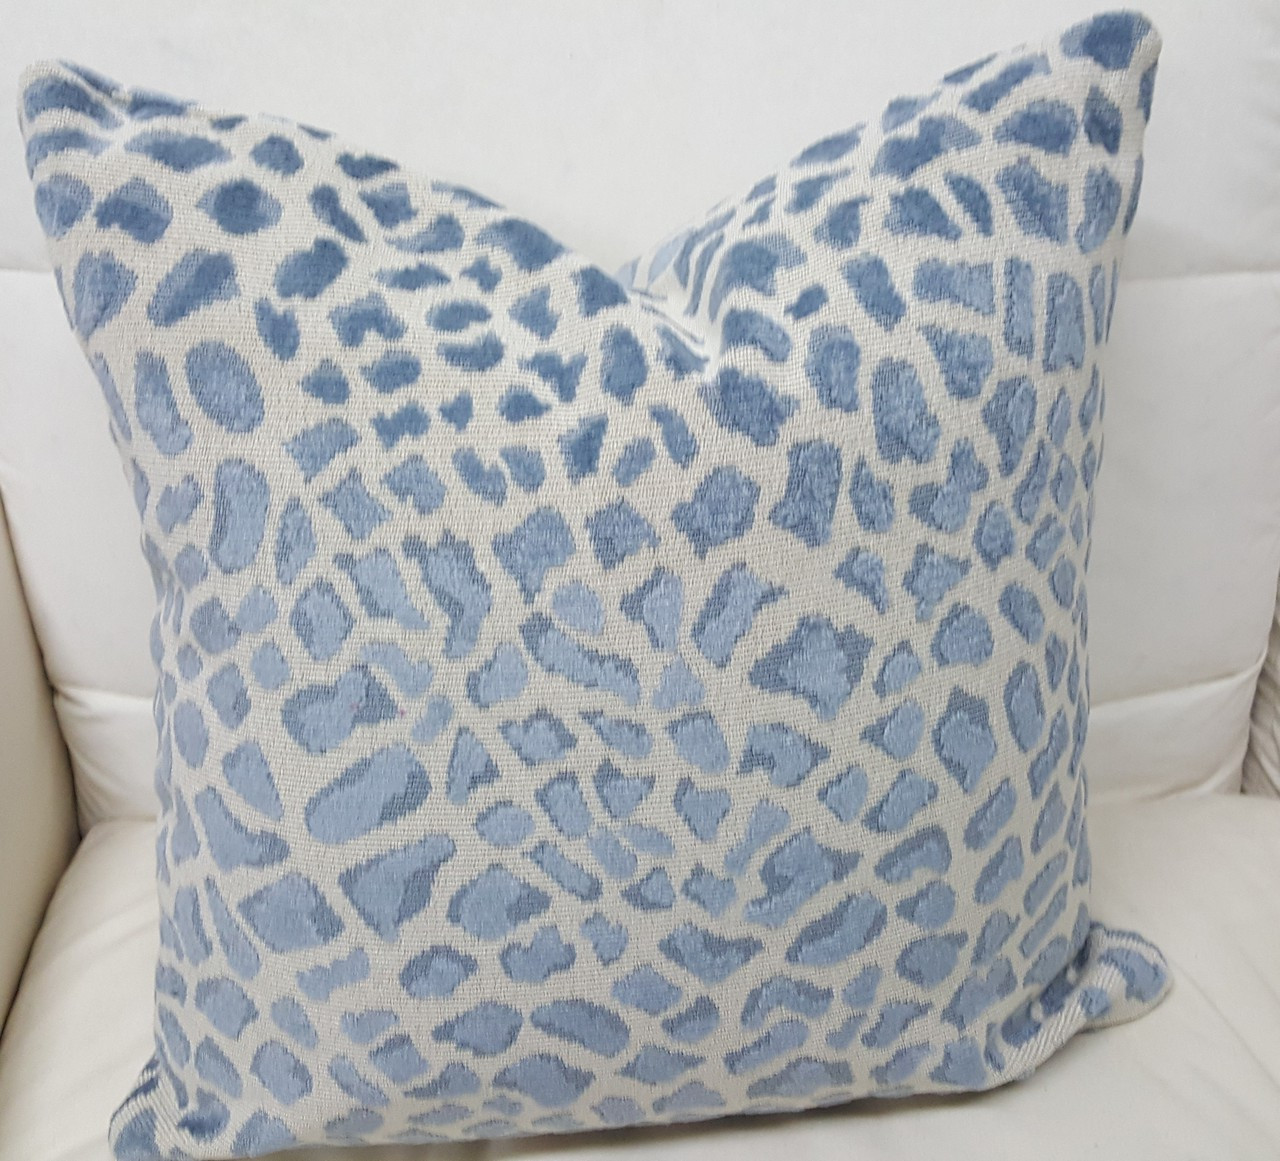 blue throw pillows at target